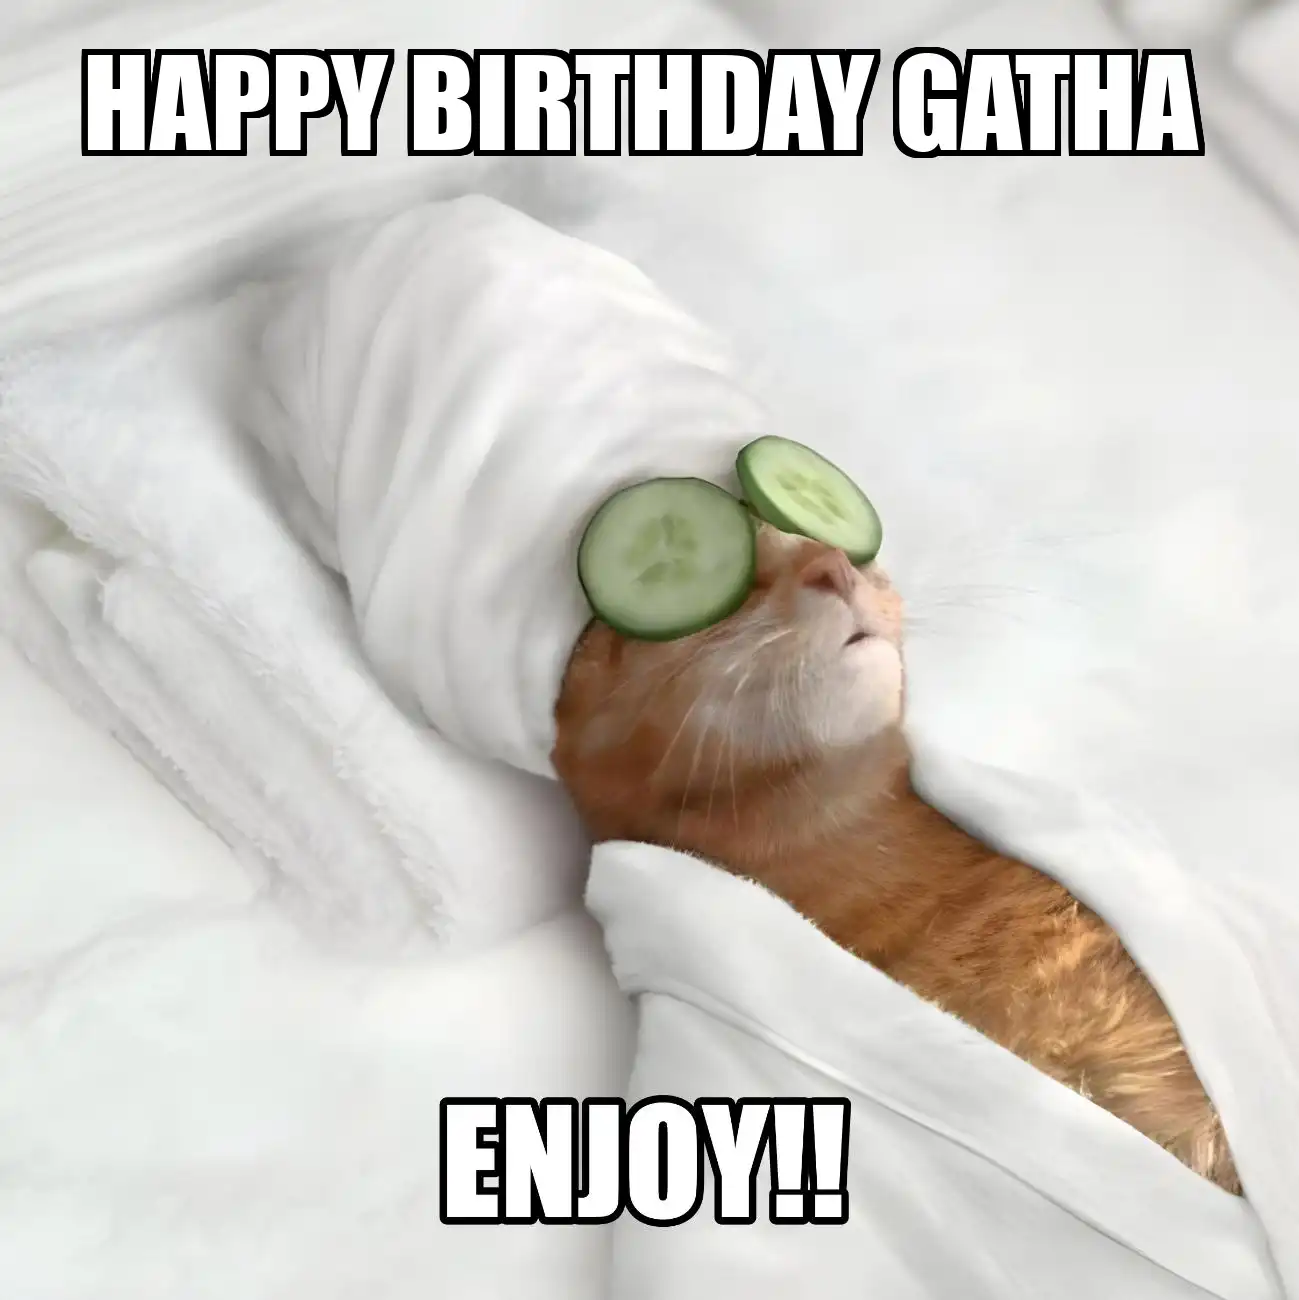 Happy Birthday Gatha Enjoy Cat Meme